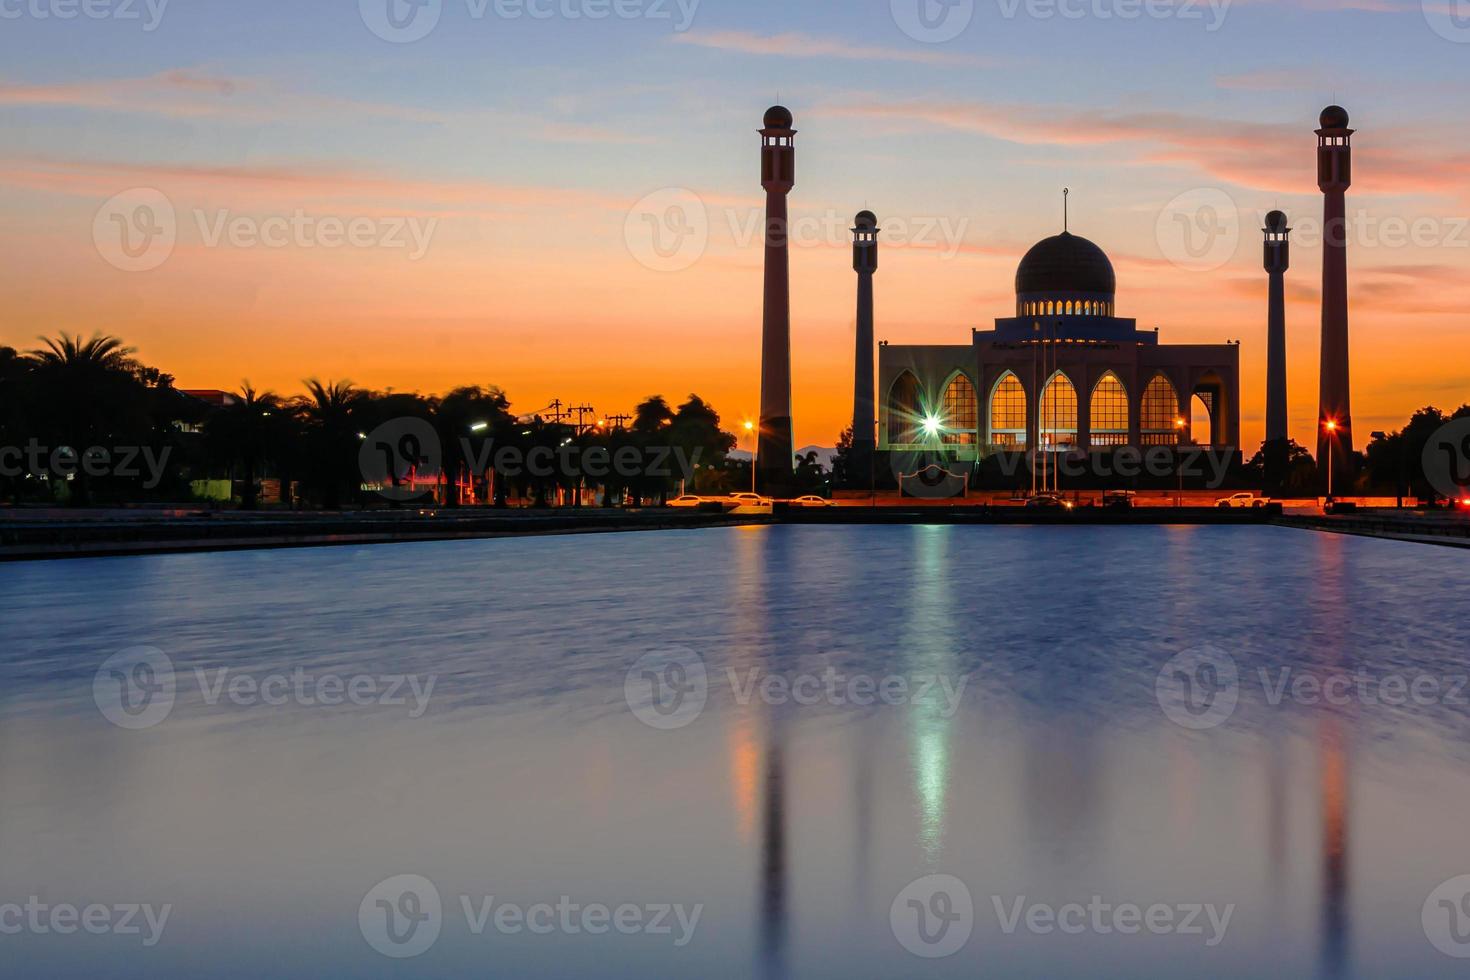 songkhla centrale moskee in dag naar nacht met kleurrijke luchten bij zonsondergang en de lichten van de moskee en reflecties in het water in het landschapsconcept van een oriëntatiepunt foto